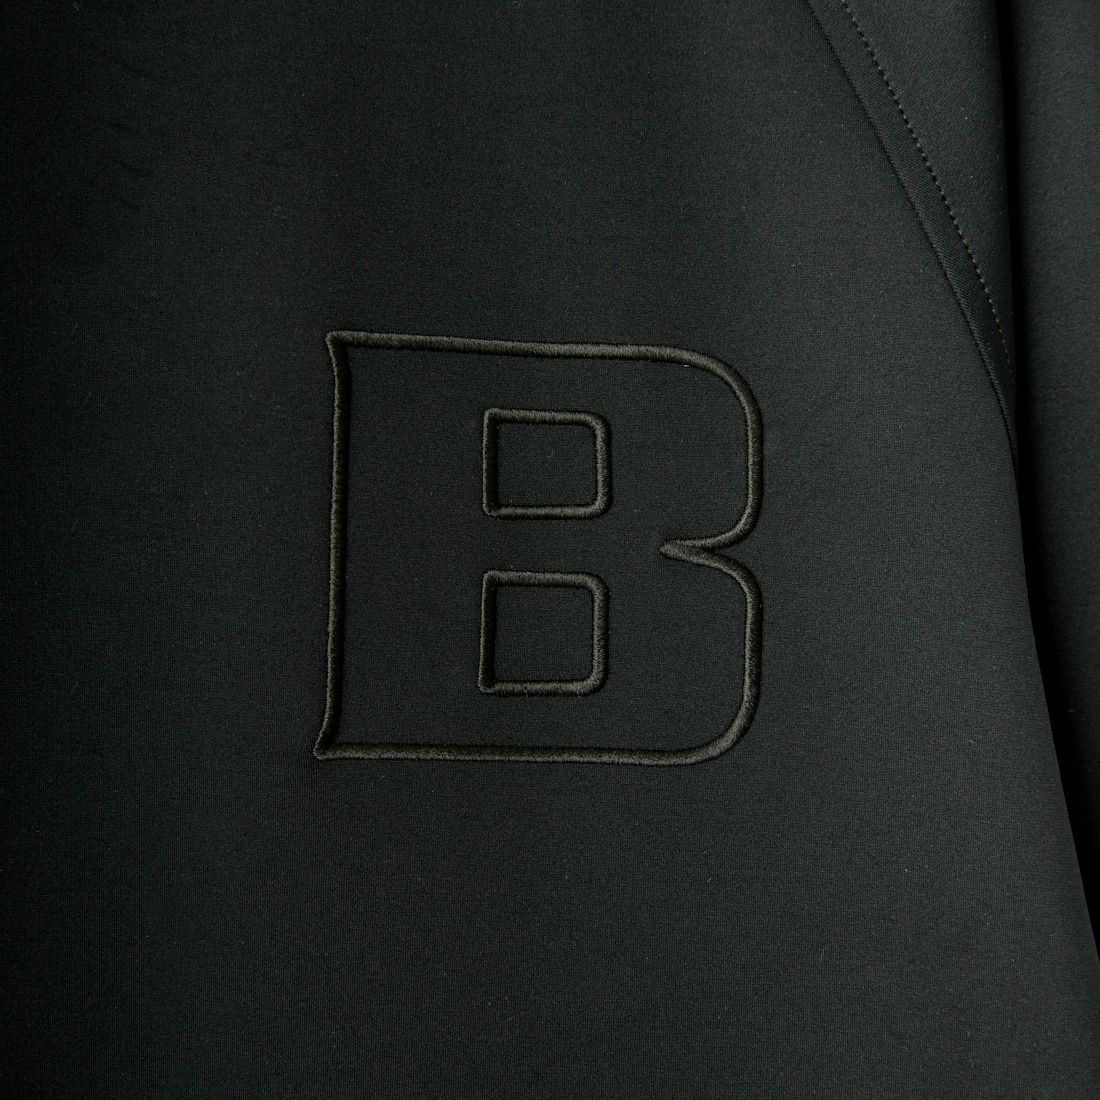 BRIEFING GOLF [ブリーフィング ゴルフ] クルーネック リラックスフィットスウェットシャツ [BRG241M23] 010 BLACK